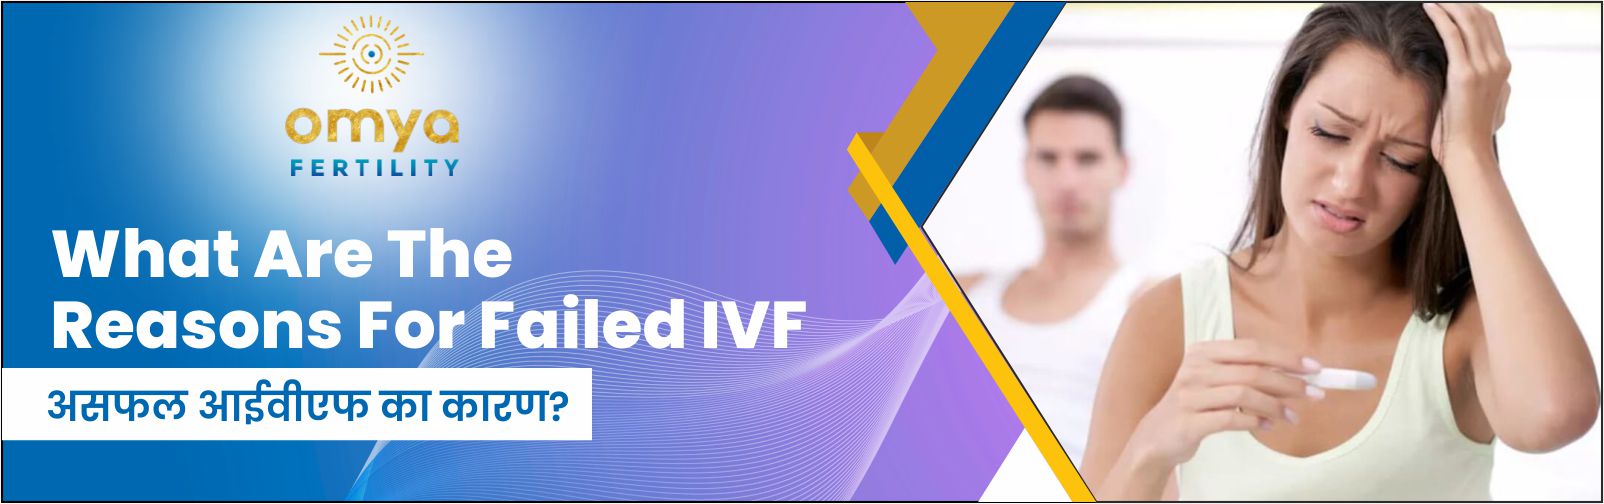 असफल आईवीएफ का कारण?- Reasons For Failed IVF | Omya